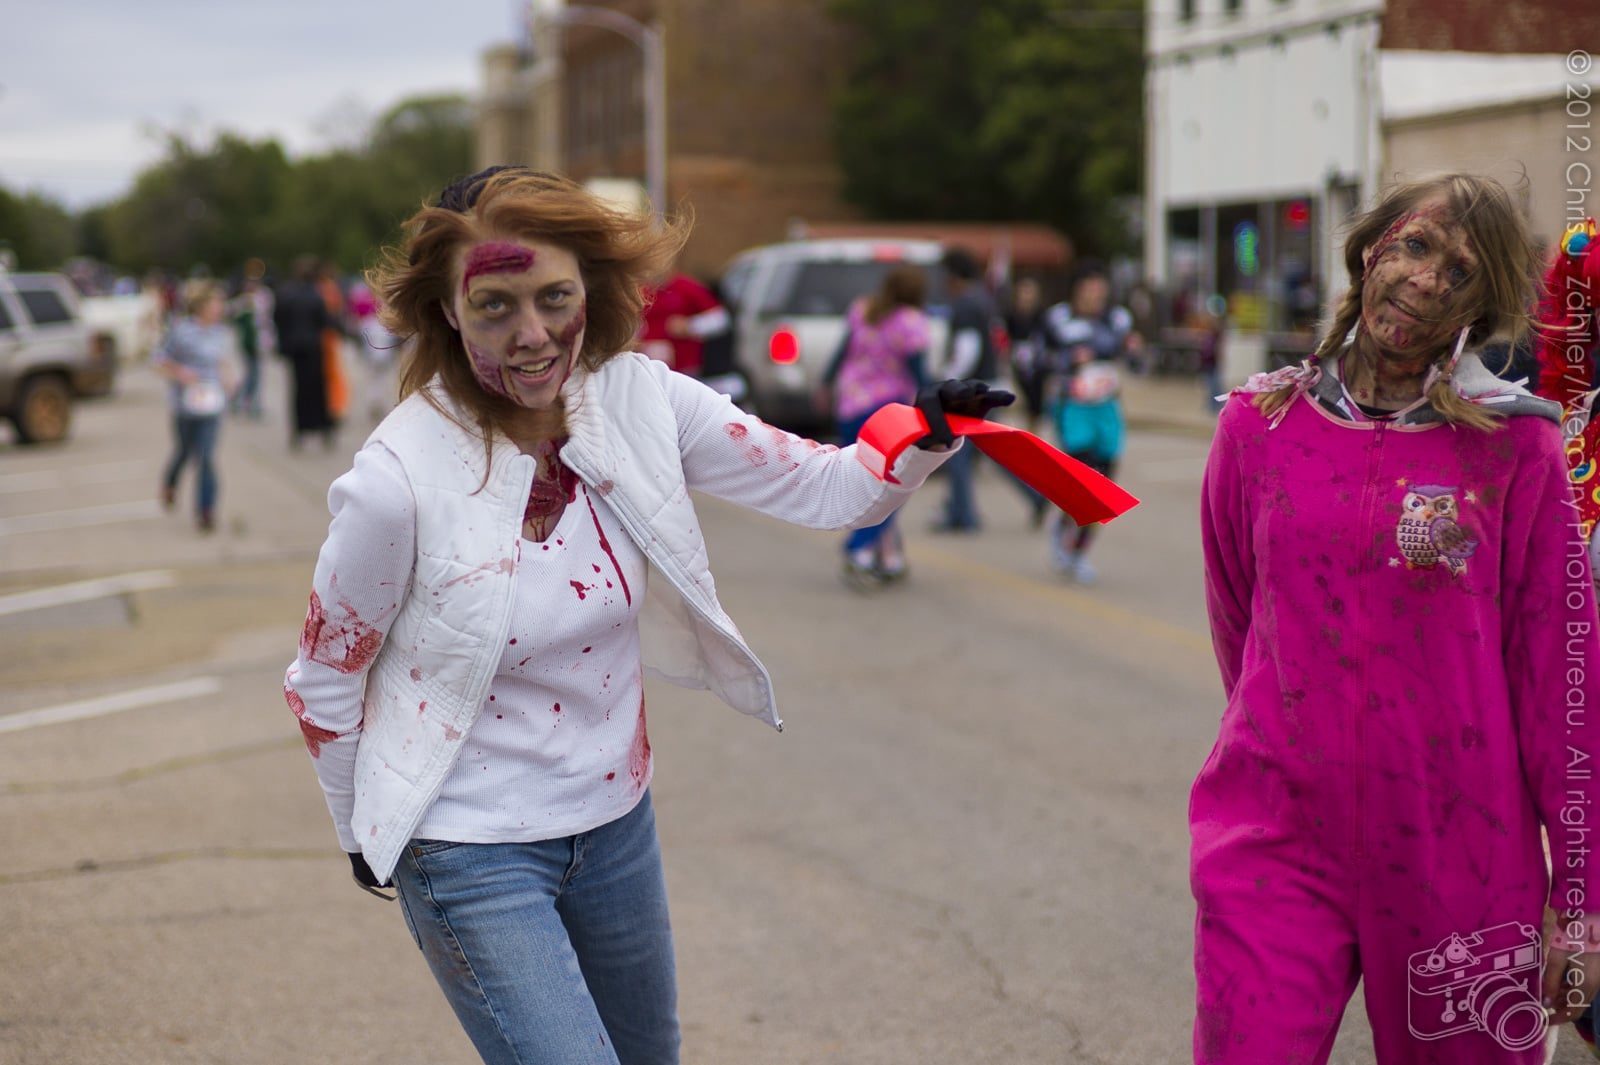 Redhead Zombie — Oklahoma’s Premier Zombie Race: Zombie Bolt 5K, Guthrie, Oklahoma